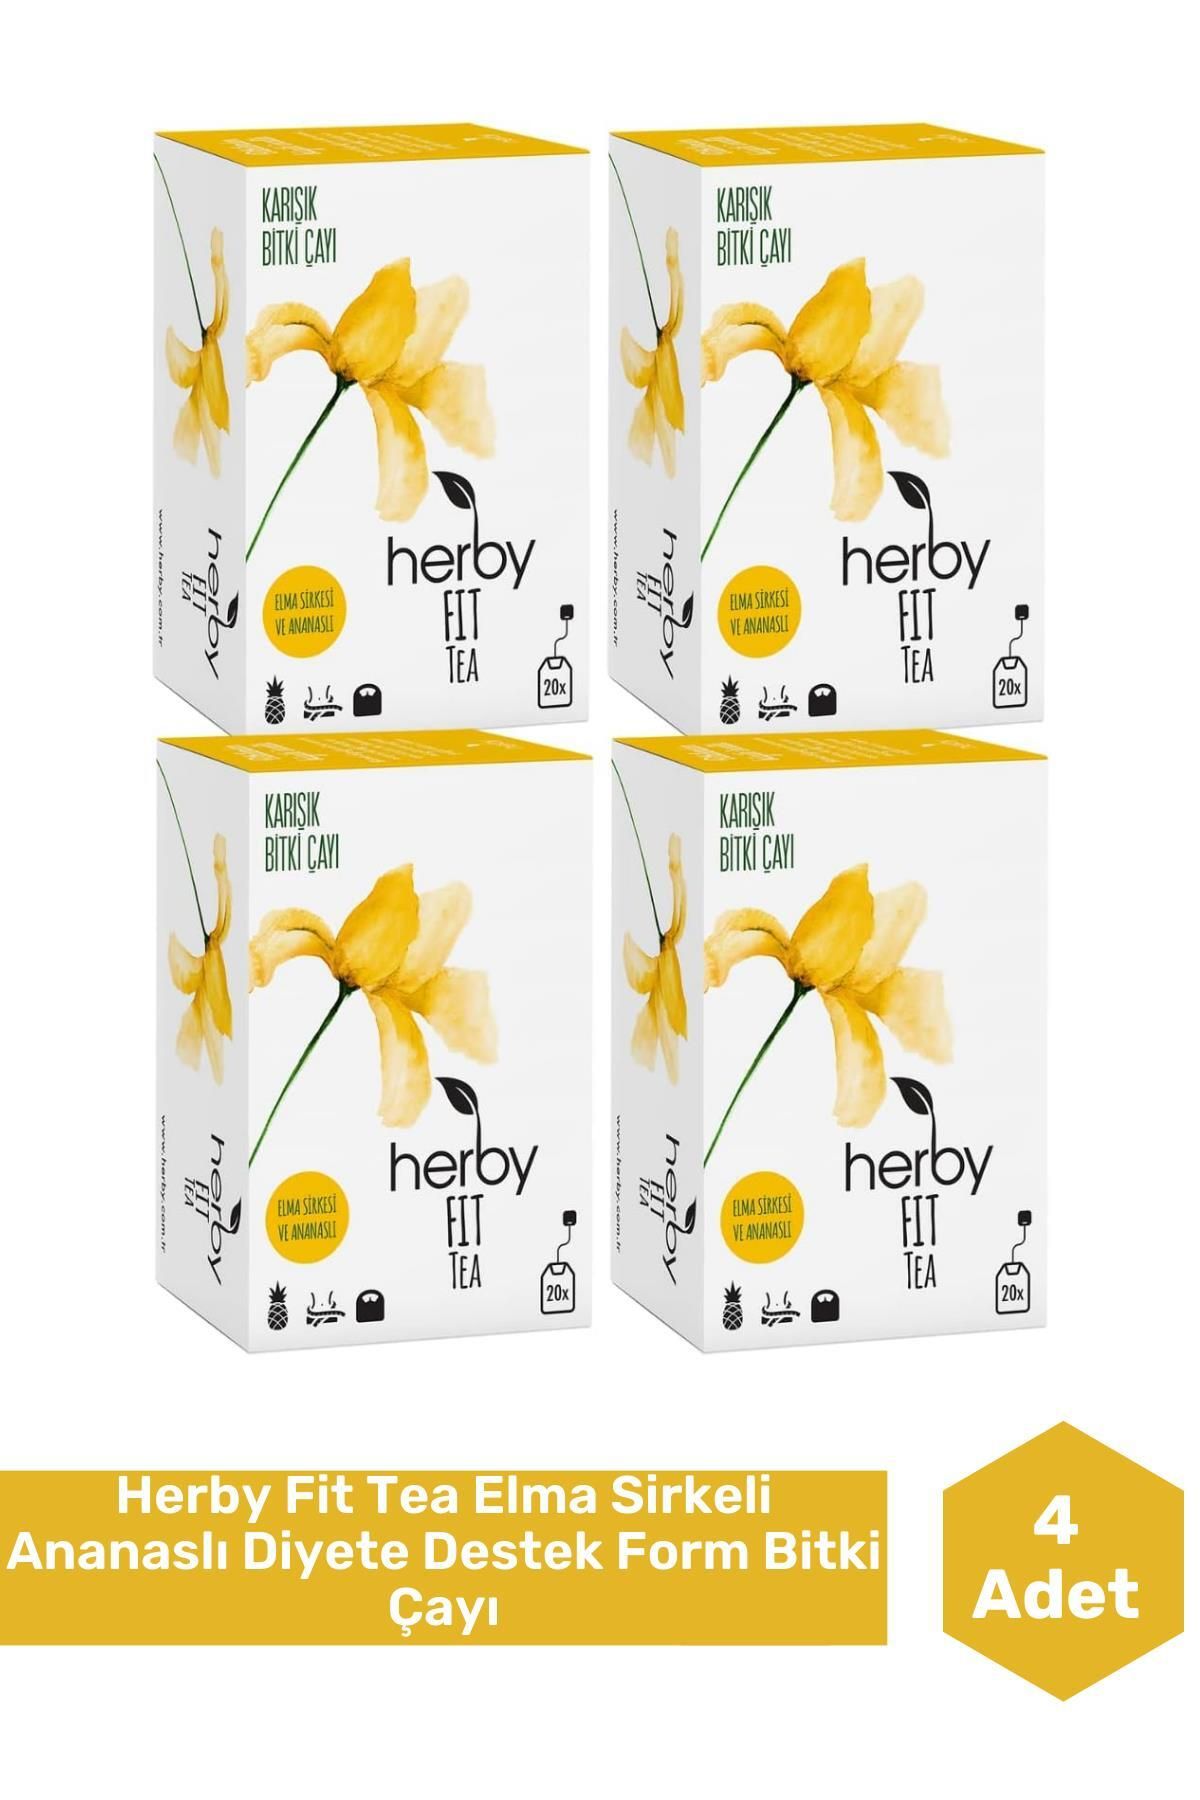 Herby Fit Tea Elma Sirkeli Ananaslı Diyete Destek Form Bitki Çayı, 4'lü Paket